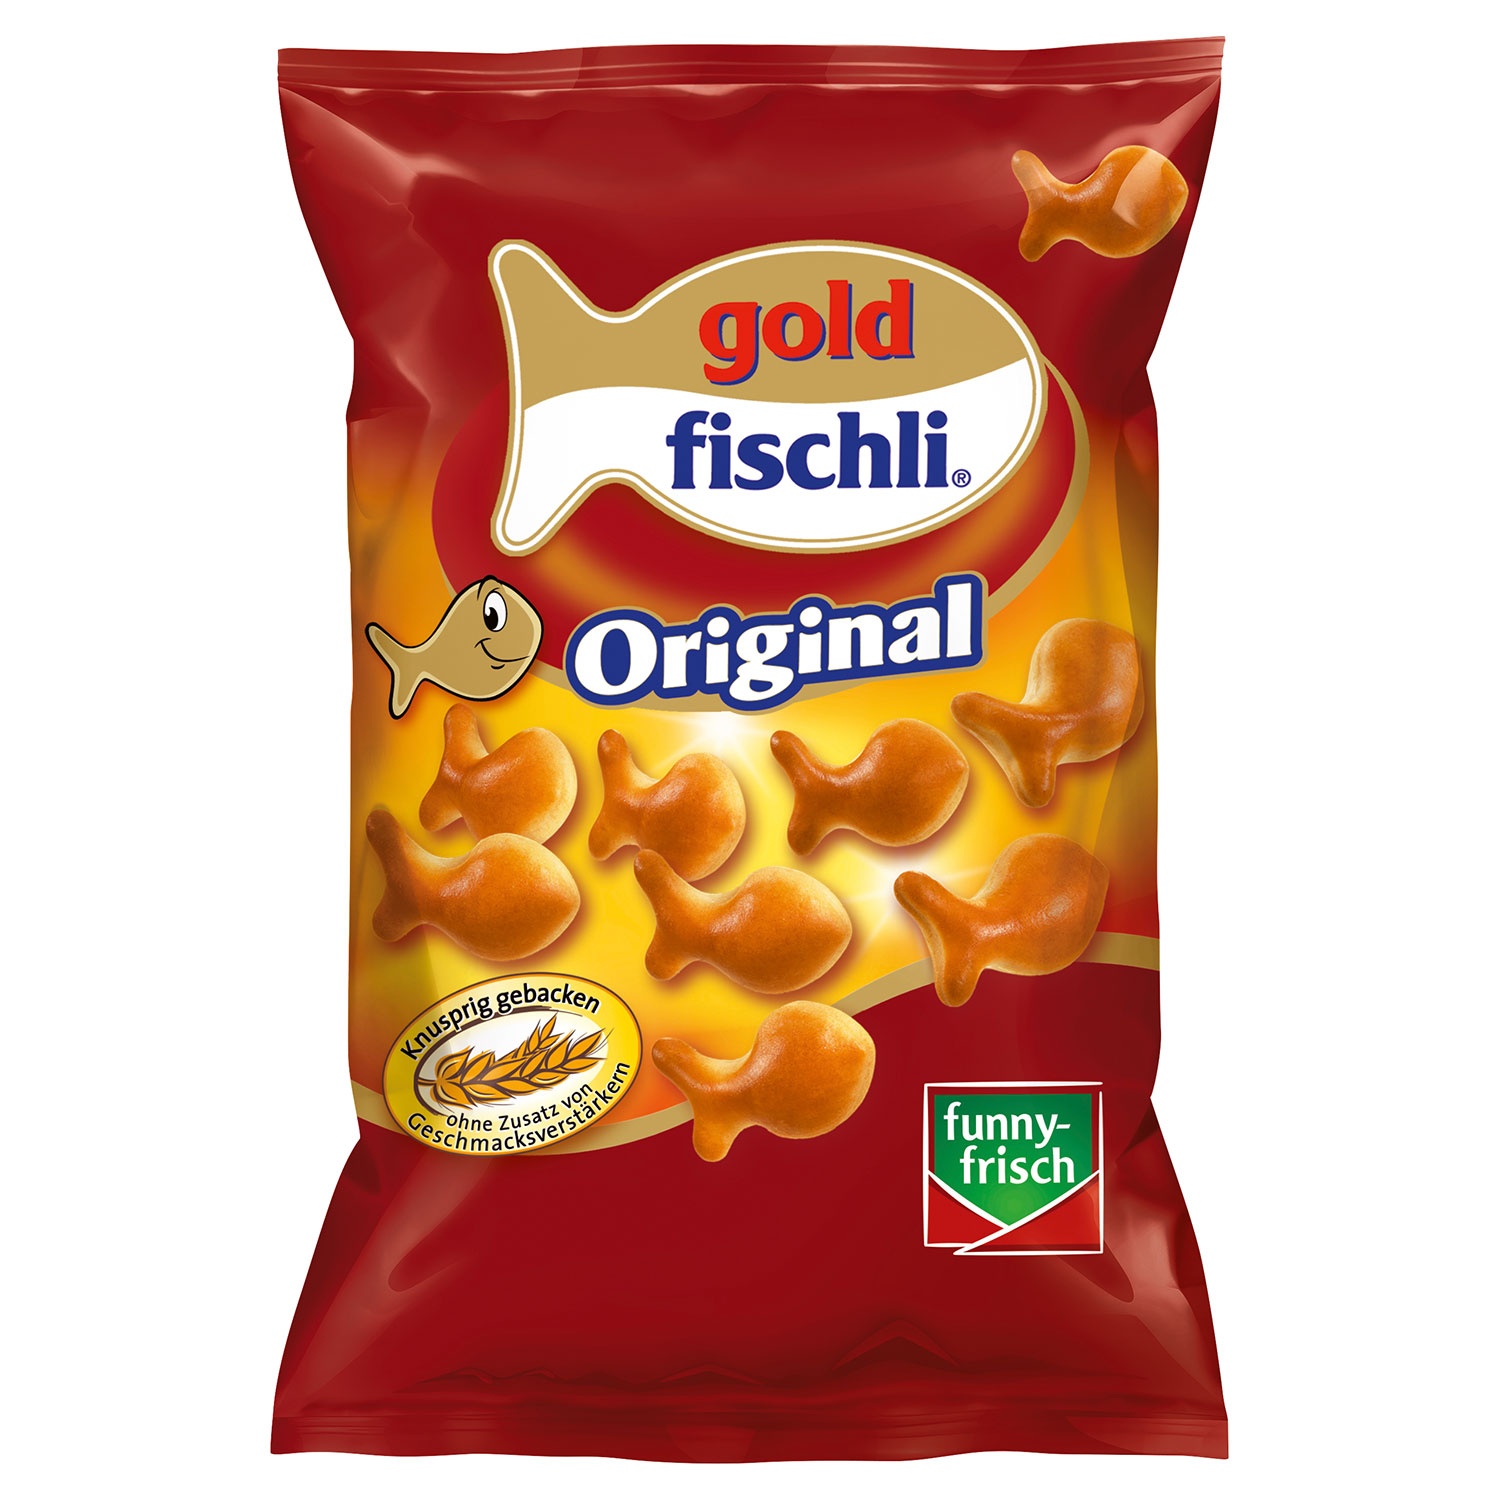 FUNNY-FRISCH goldfischli 100 g